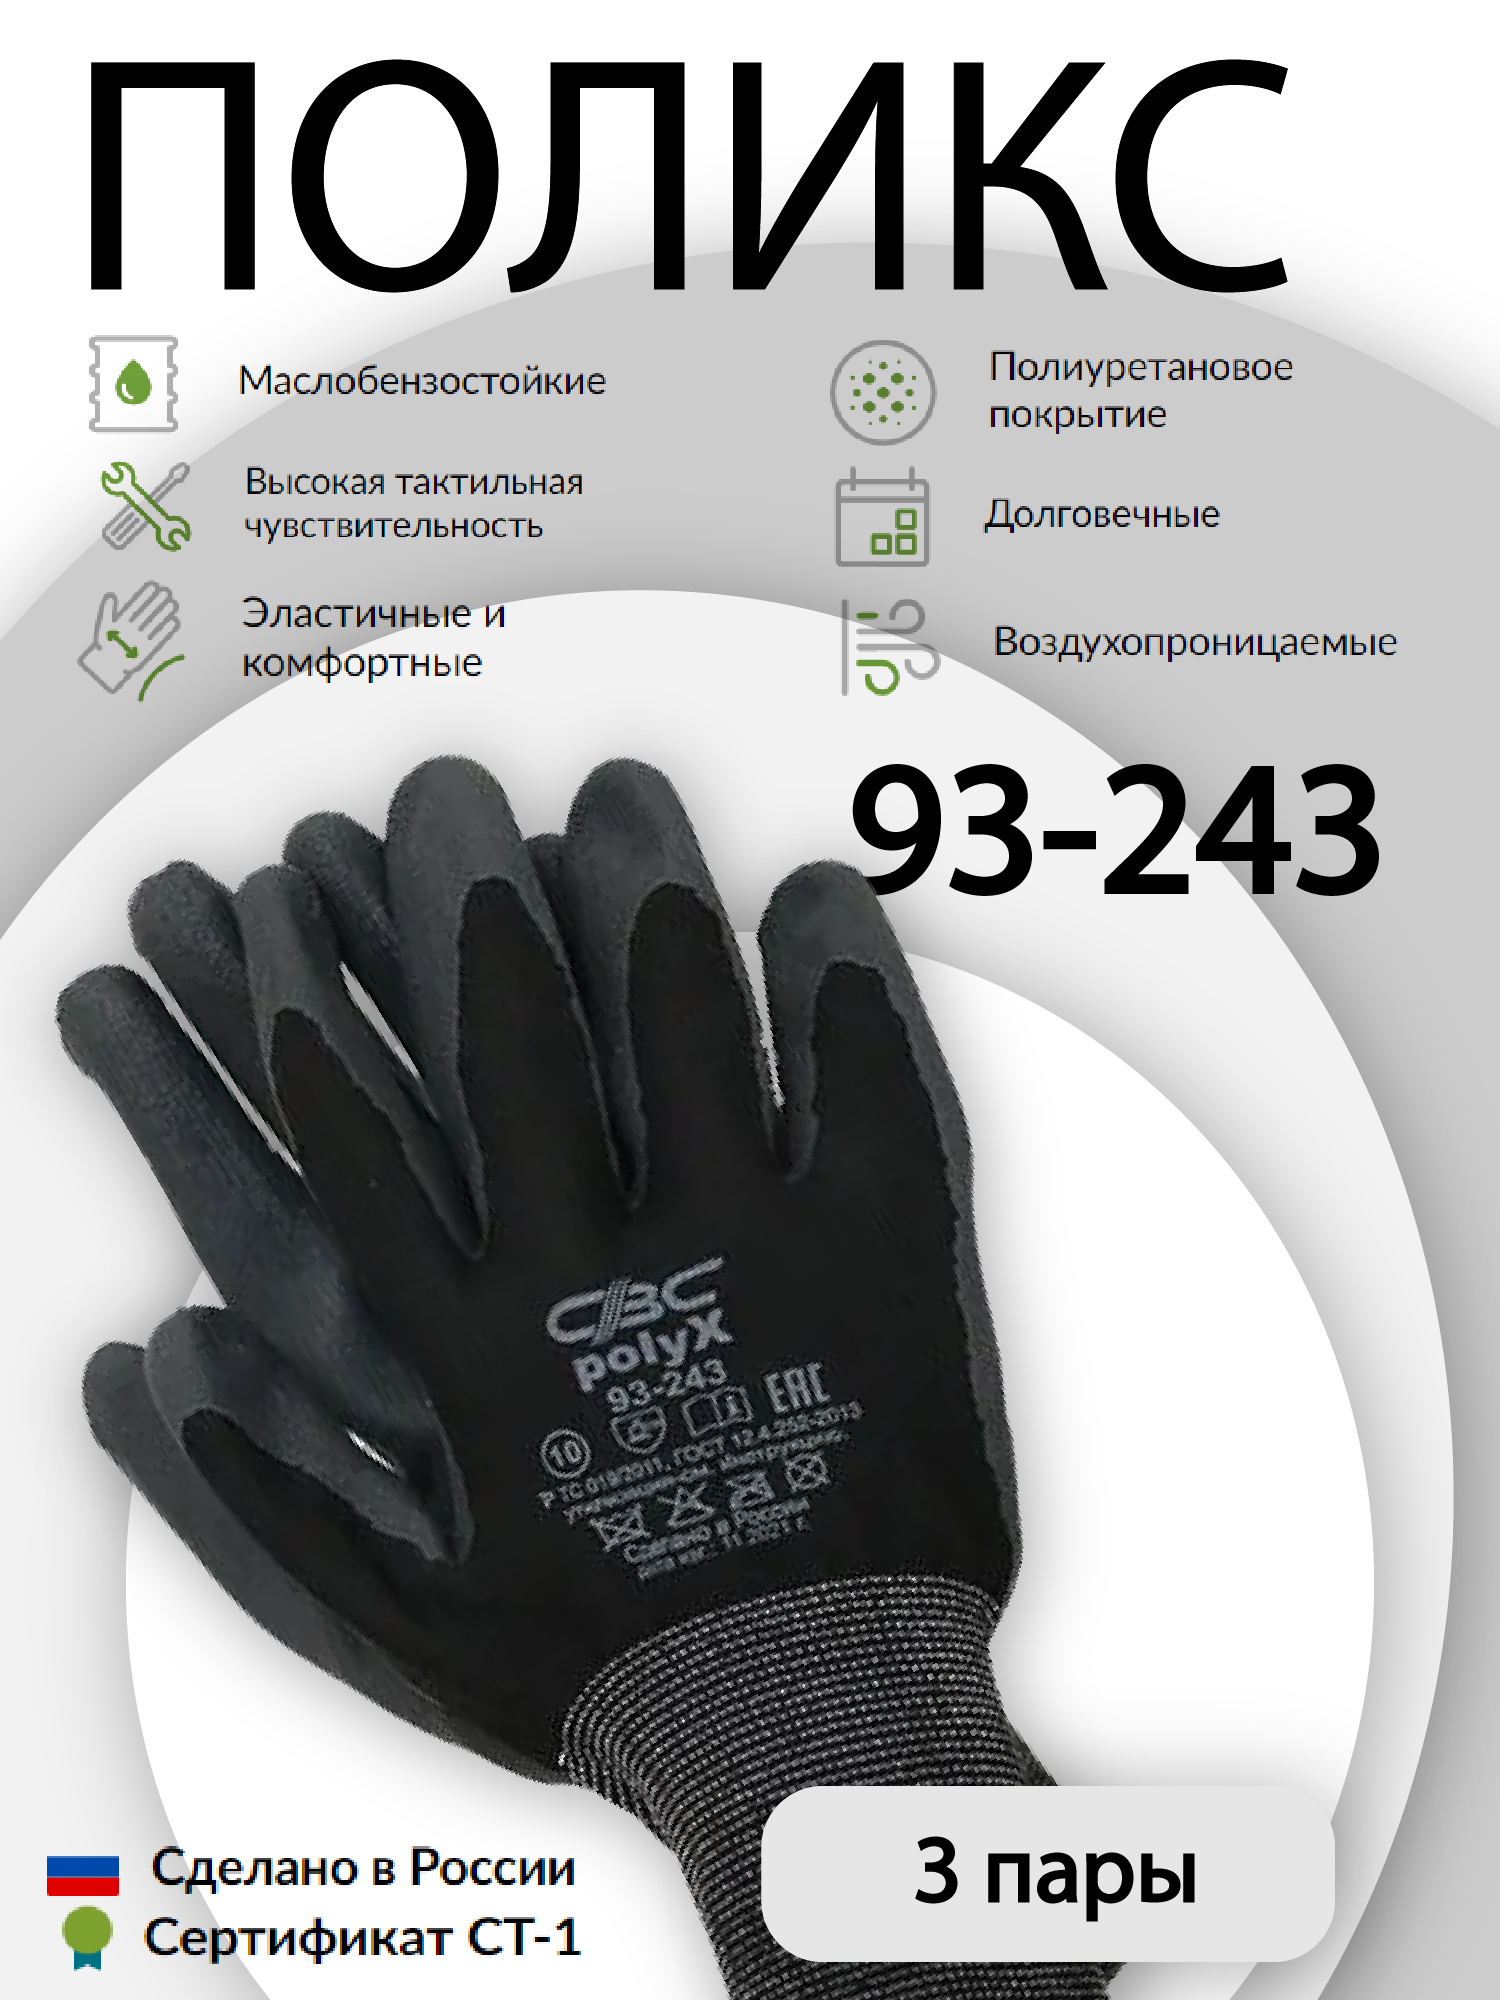 Перчатки защитные СВС ПОЛИКС 93-243 эластичные, с полиуретановым покрытием 3 пары перчатки свс поликс 93 243 защитные эластичные с полиуретановым покрытием